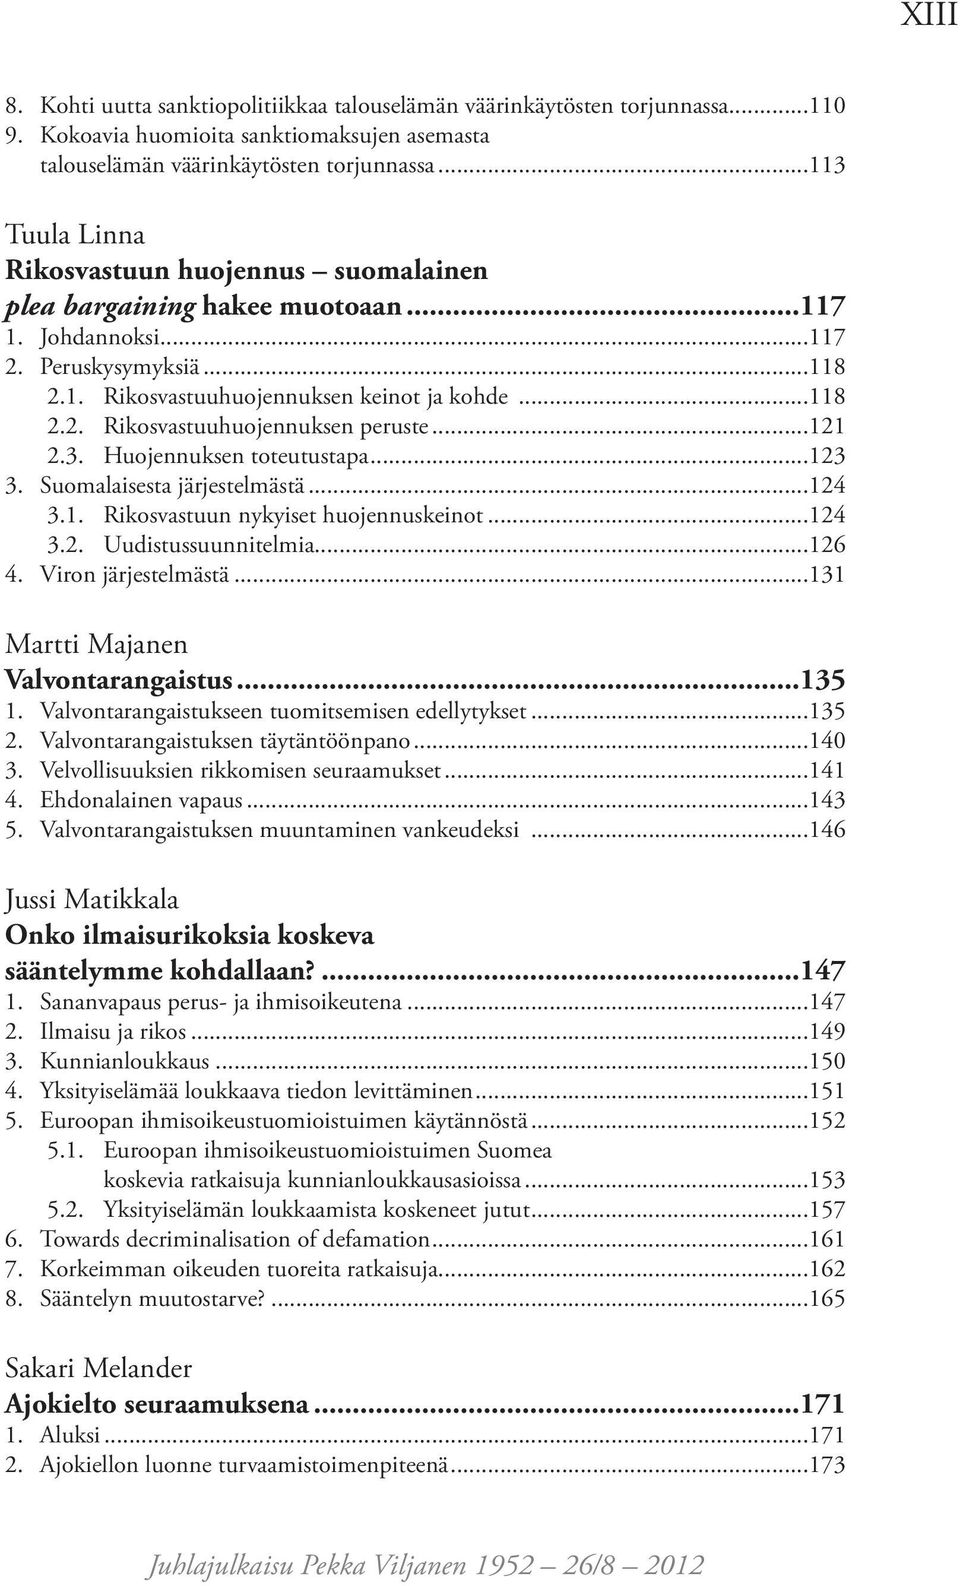 ..121 2.3. Huojennuksen toteutustapa...123 3. Suomalaisesta järjestelmästä...124 3.1. Rikosvastuun nykyiset huojennuskeinot...124 3.2. Uudistussuunnitelmia...126 4. Viron järjestelmästä.